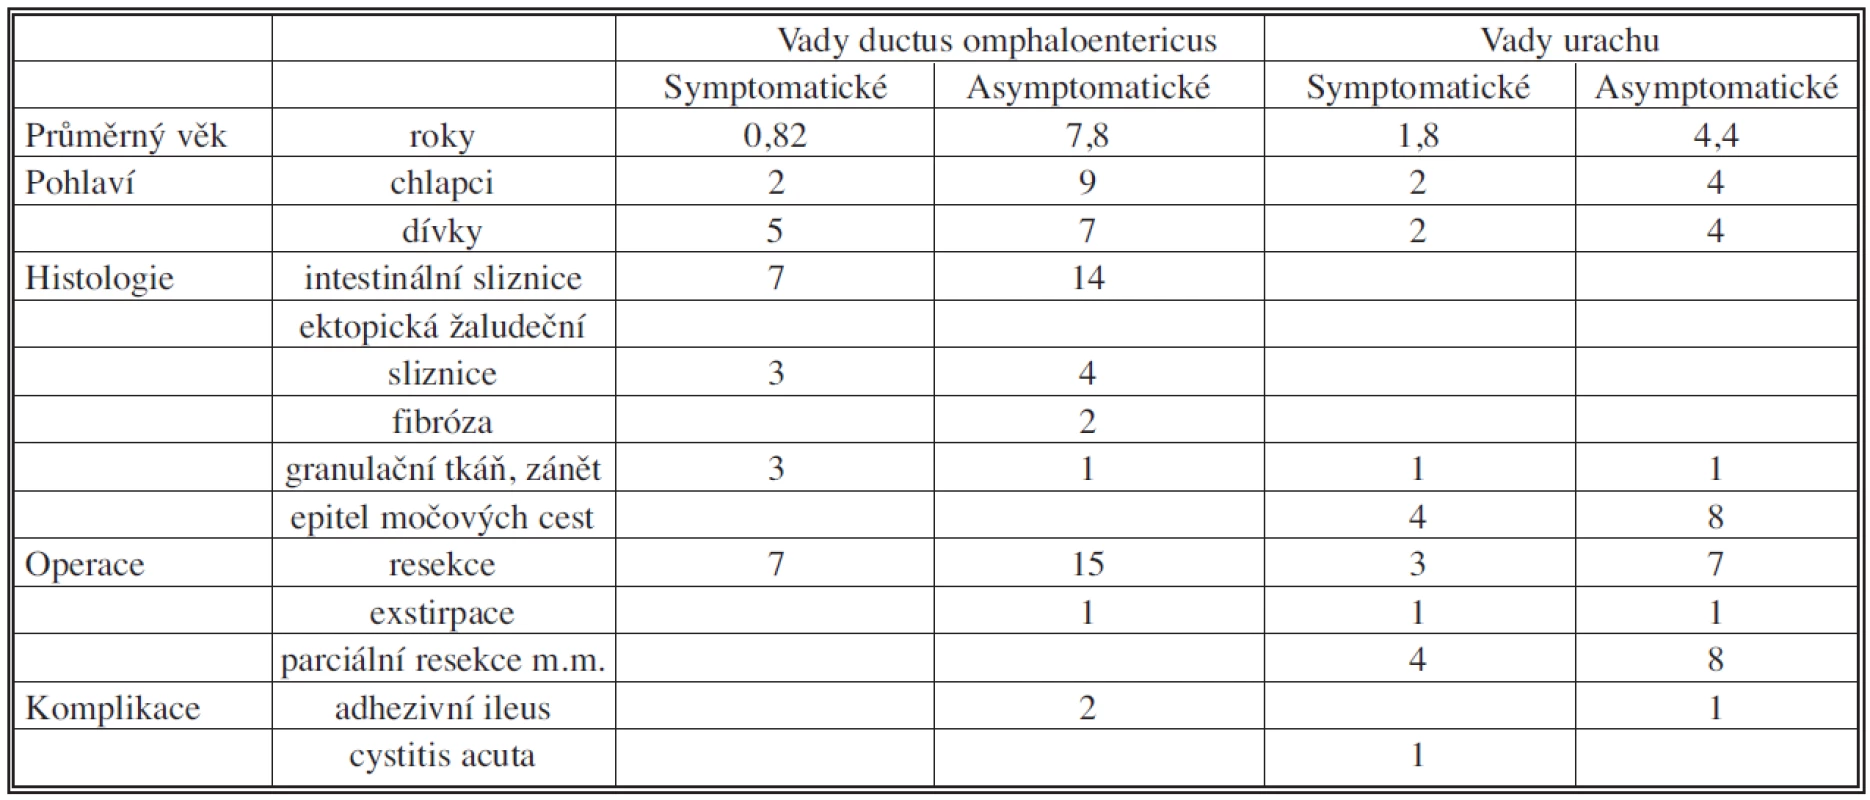 Srovnání symptomatických a asymptomatických vad na základě sledovaných parametrů
Tab. 1. Comparison between symptomatic and asymptomatic disorders based on the studied parameters